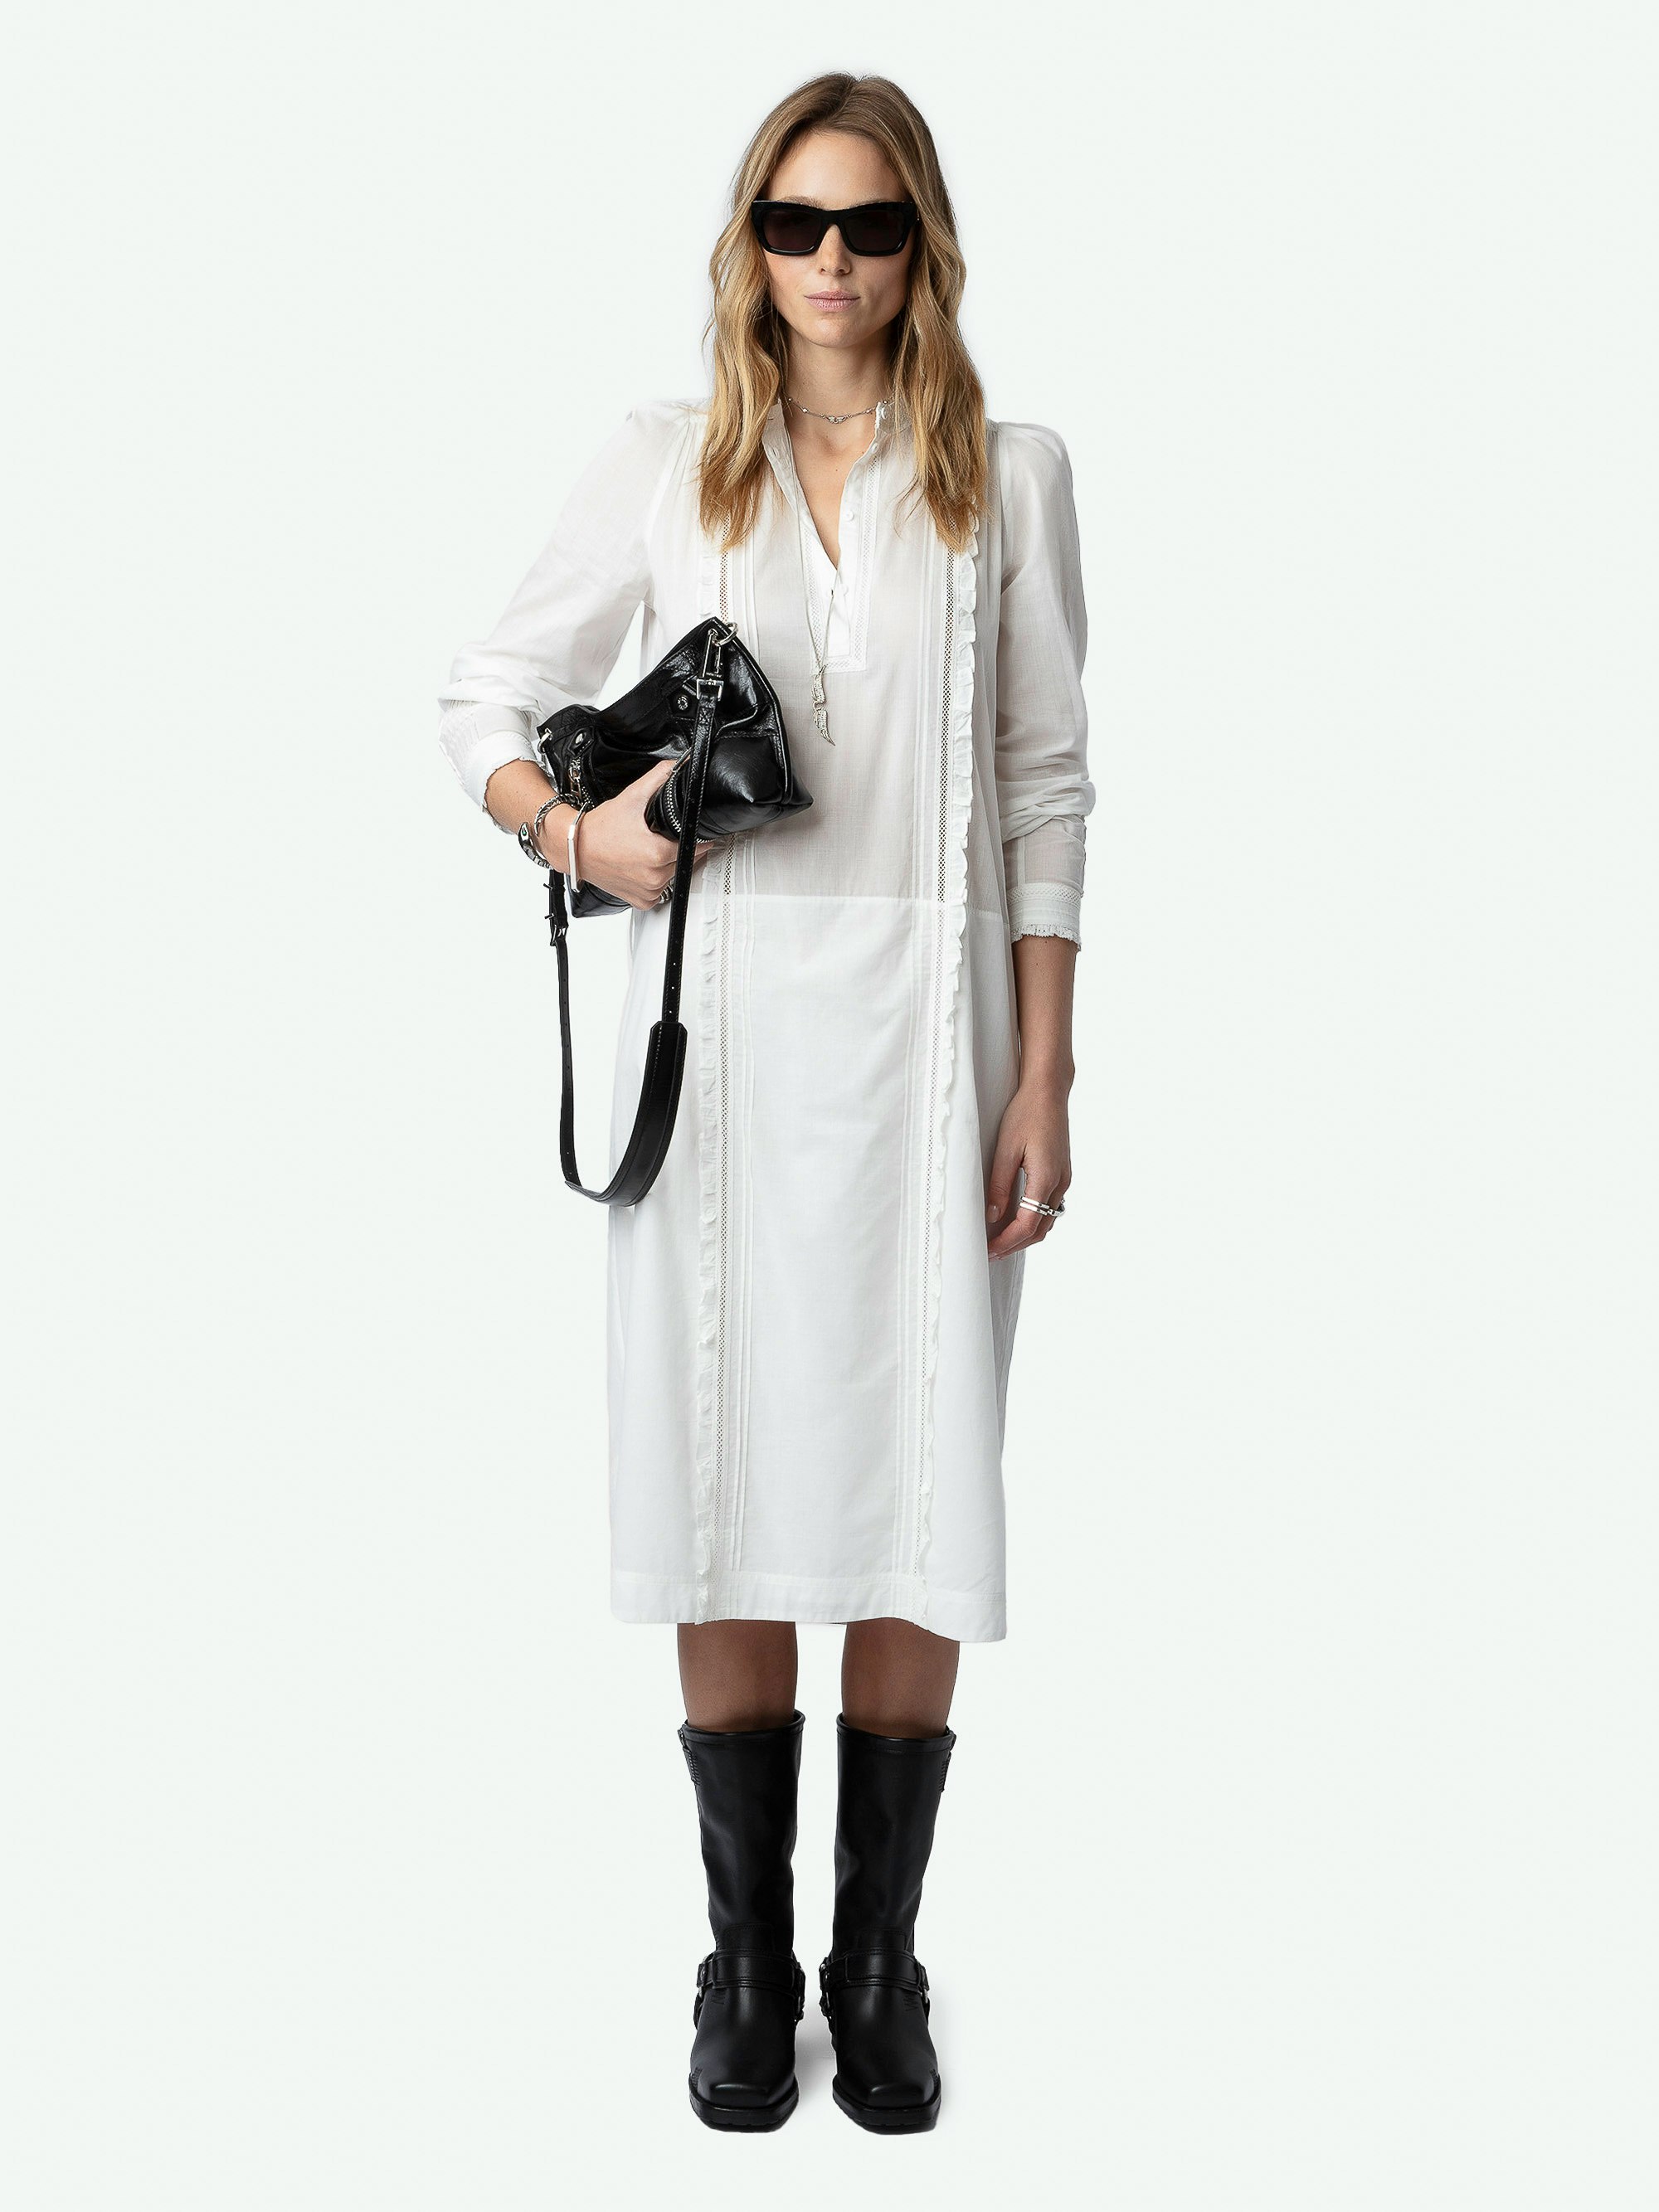 Vestido Ritchil - Vestido de largo medio de gasa de algodón de color blanco, de manga larga, con cinturón extraíble, encaje y volantes.